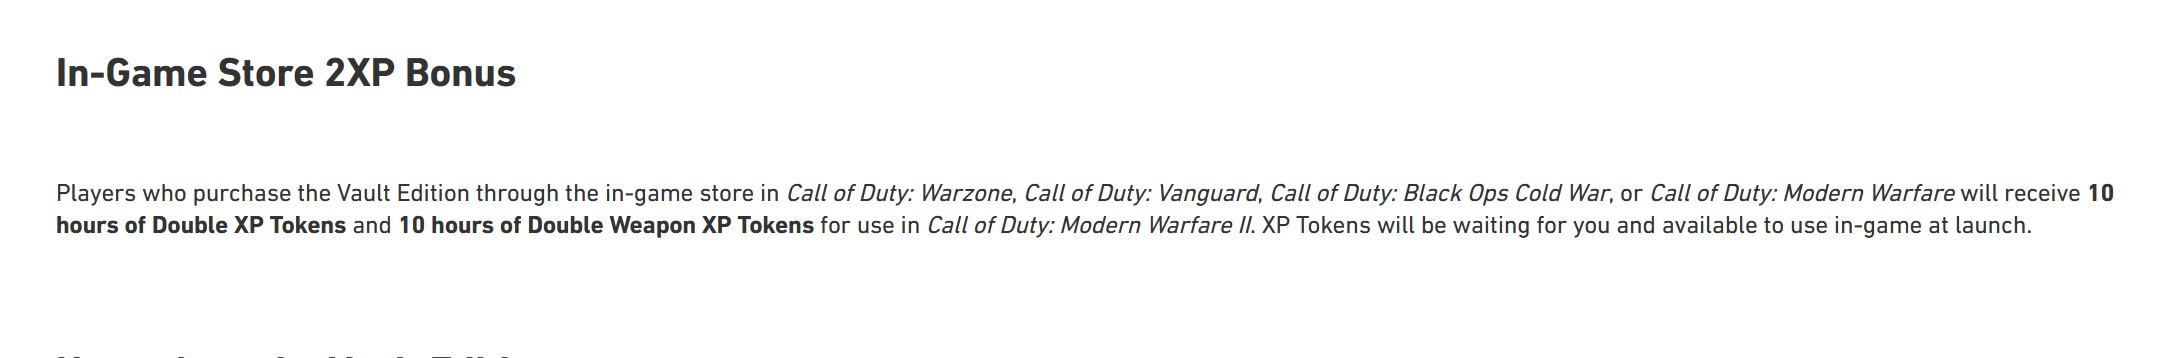 Call of Duty: Modern Warfare 2 Vault Edition 2XP offer